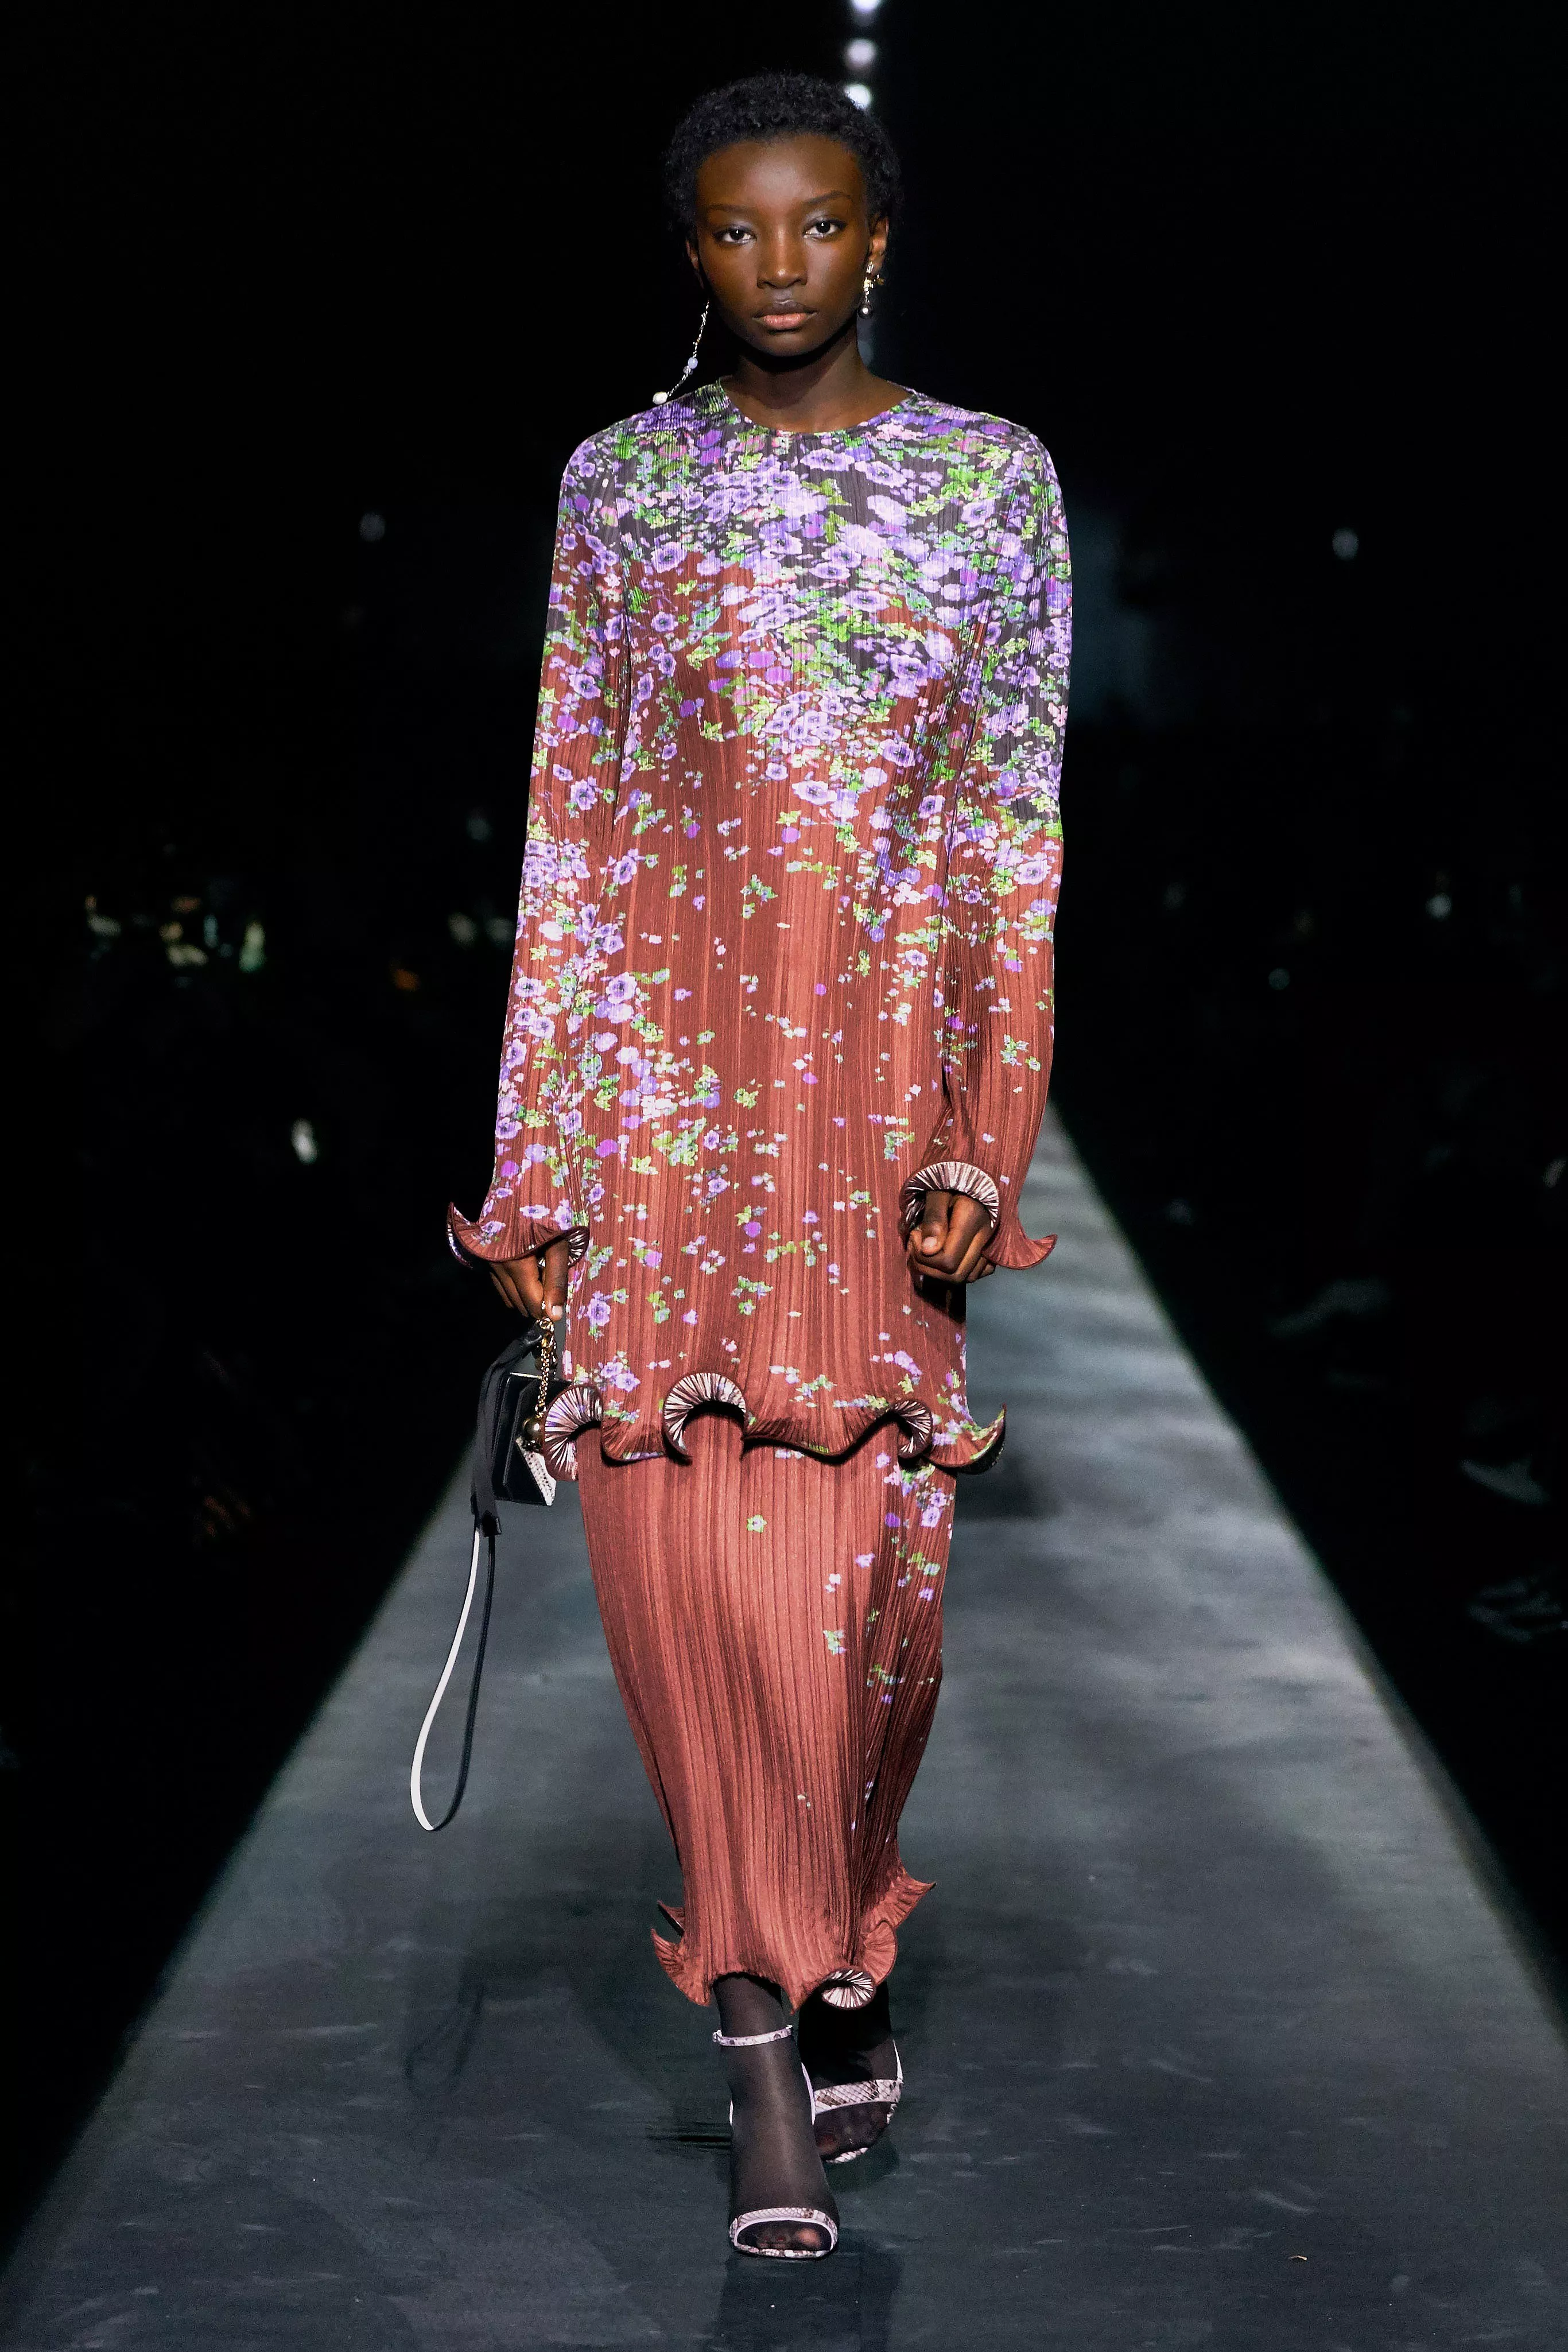 مجموعة Givenchy للأزياء الجاهزة لخريف 2019: تصاميم مستوحاة من الثقافة البريطانية ومن حكايا الحب القديمة